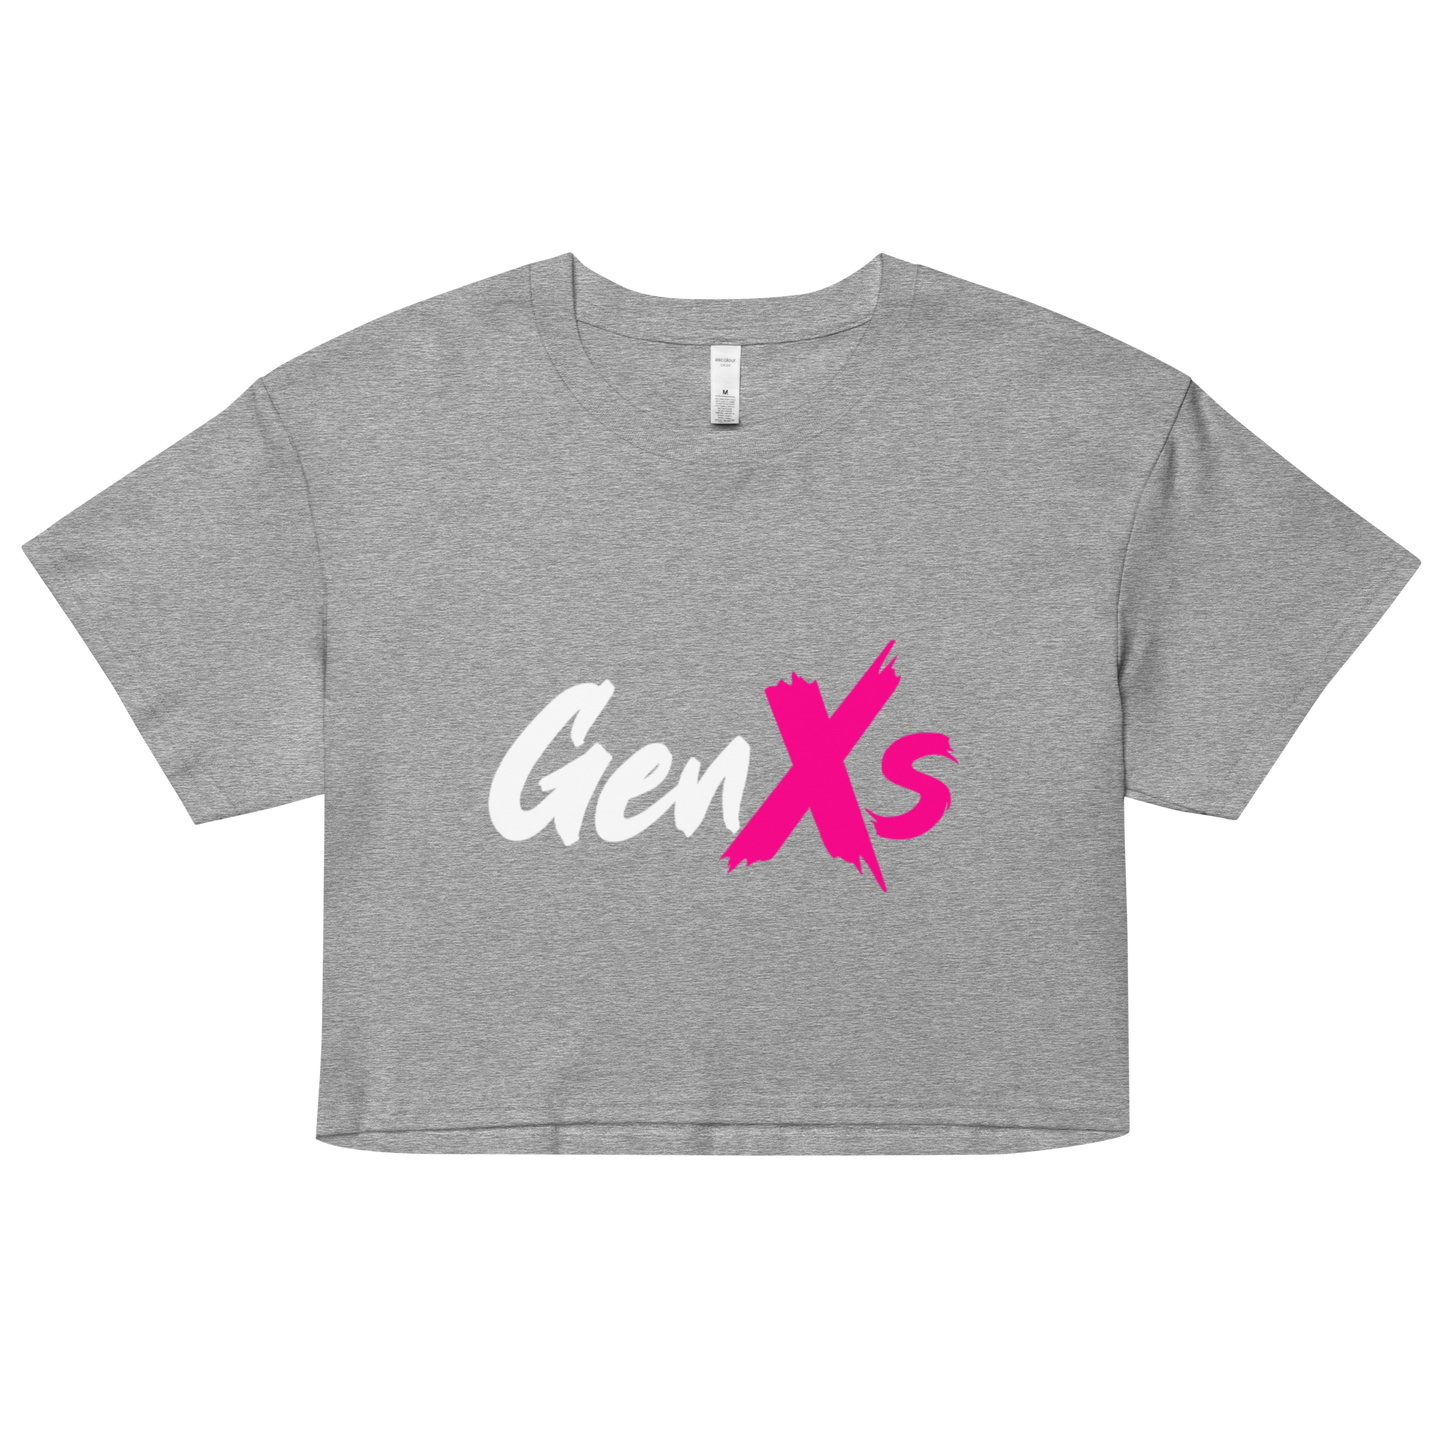 GenXs Women’s crop top